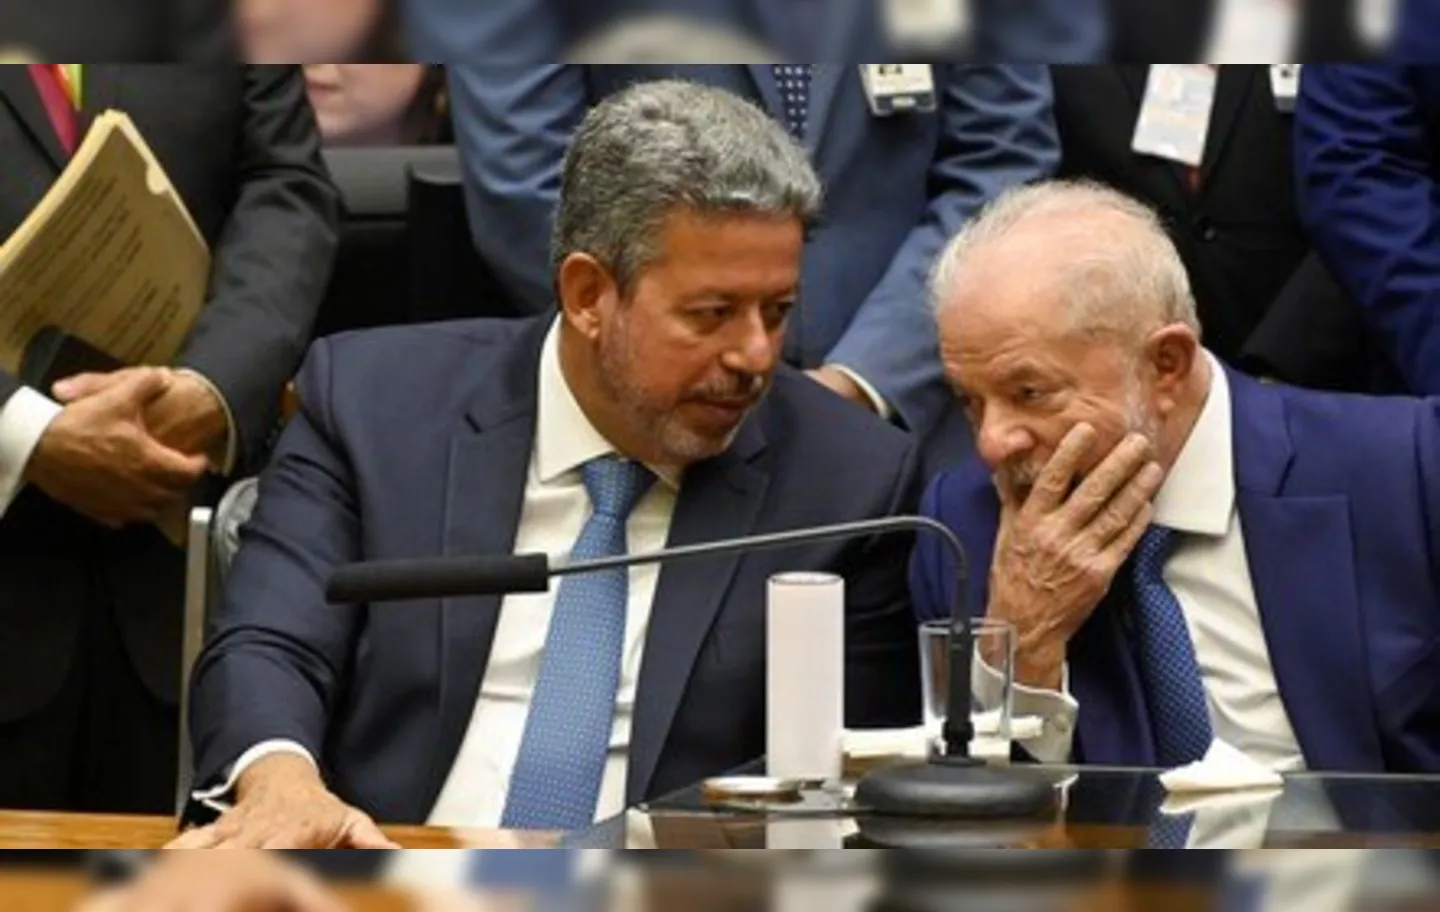 Reforma ministerial aconteceu porque o governo Lula tenta negociar apoio do Centrão no Congresso